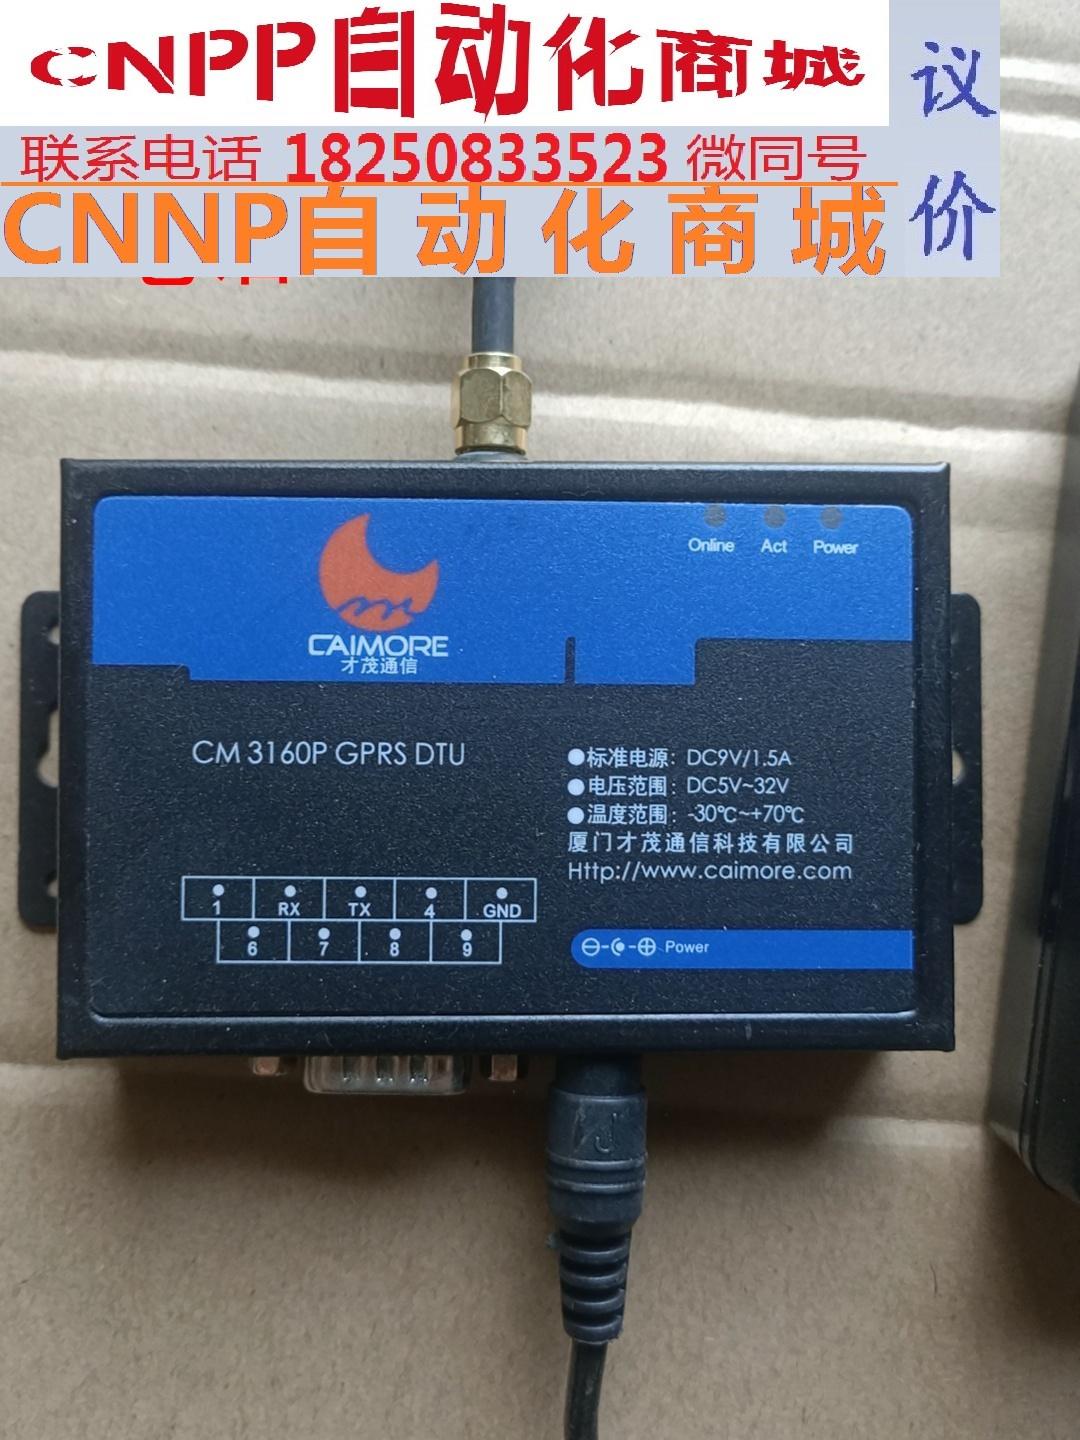 才茂通信CM3160P GPRS DTU工业级无线传